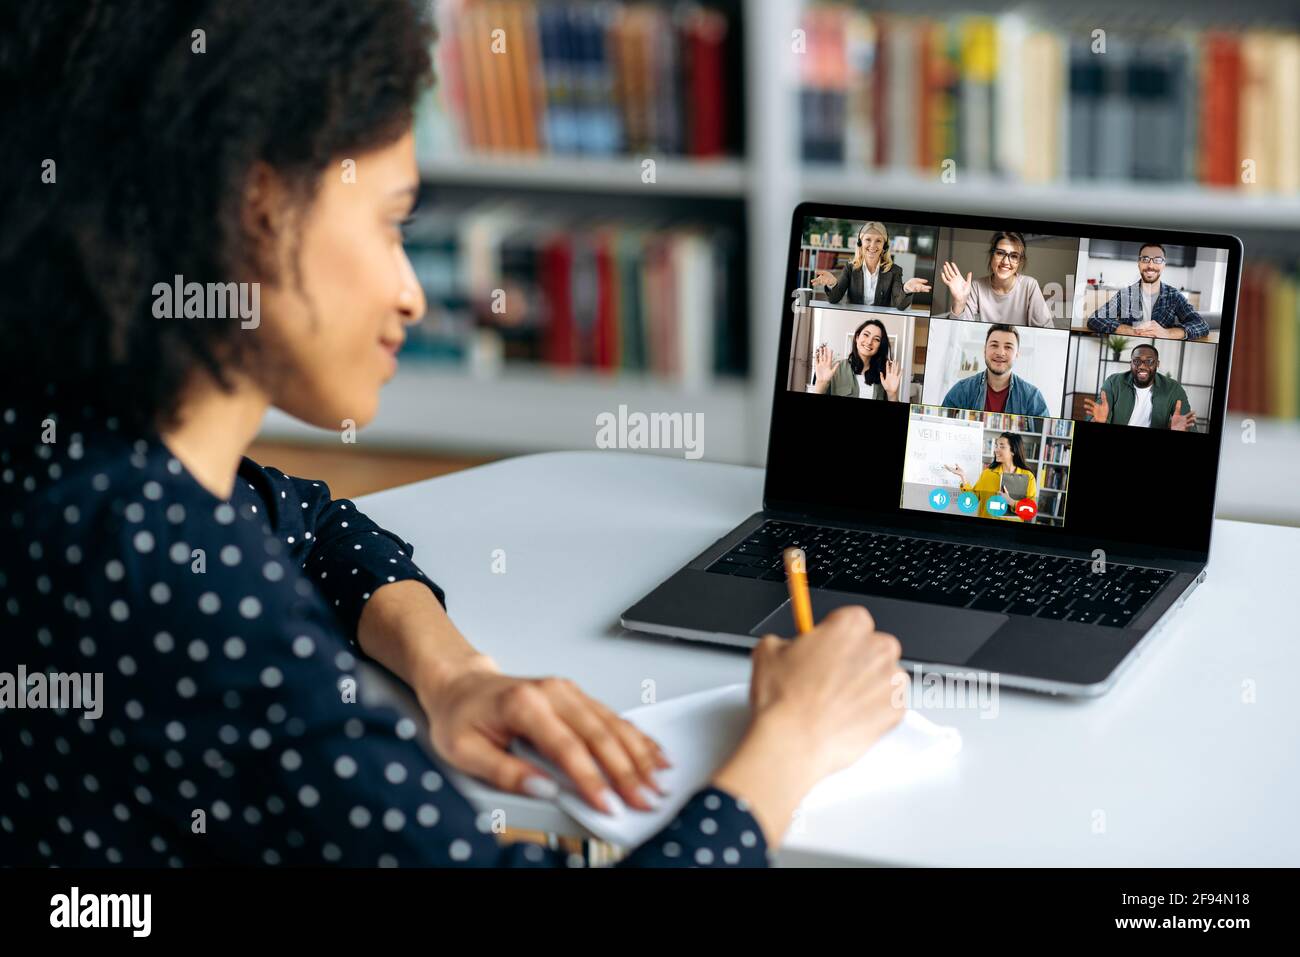 Formazione online tramite videoconferenza. La studentessa afroamericana prende appunti durante una lezione, su un computer portatile schermo femmina insegnante conduce una lezione online per gli studenti. Concetto di comunicazione virtuale Foto Stock